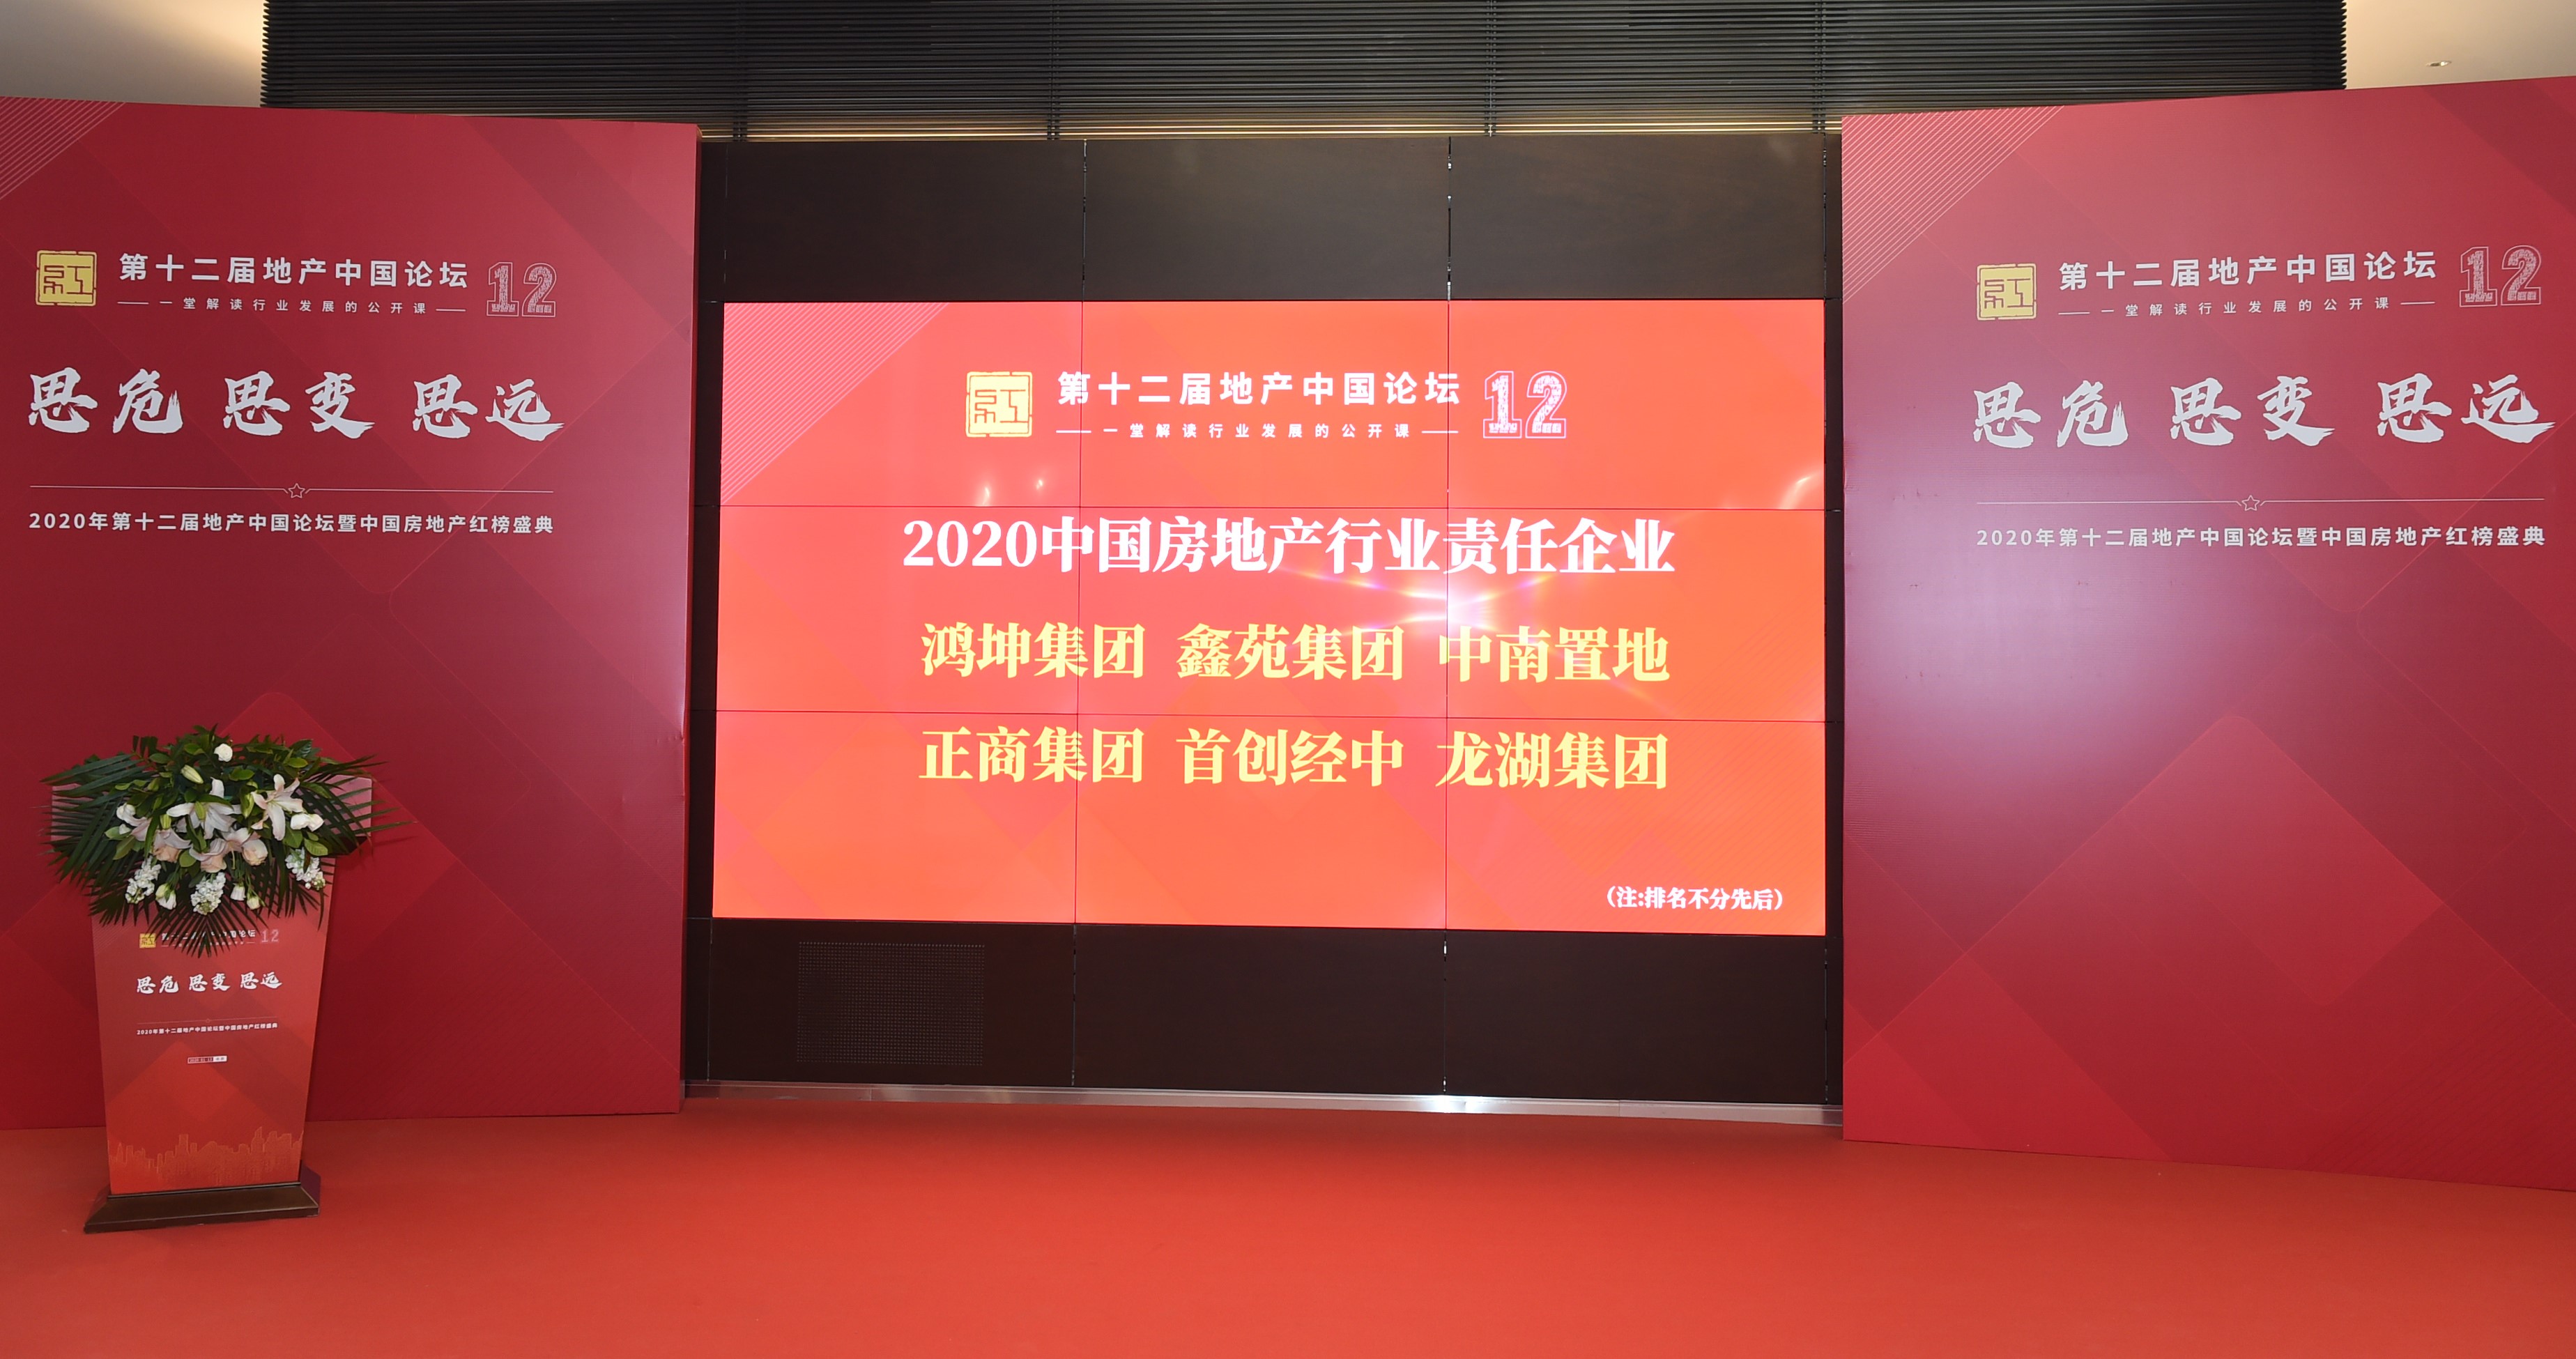 积极践行社会责任 多家房企荣膺“2020中国房地产行业责任企业”-中国网地产